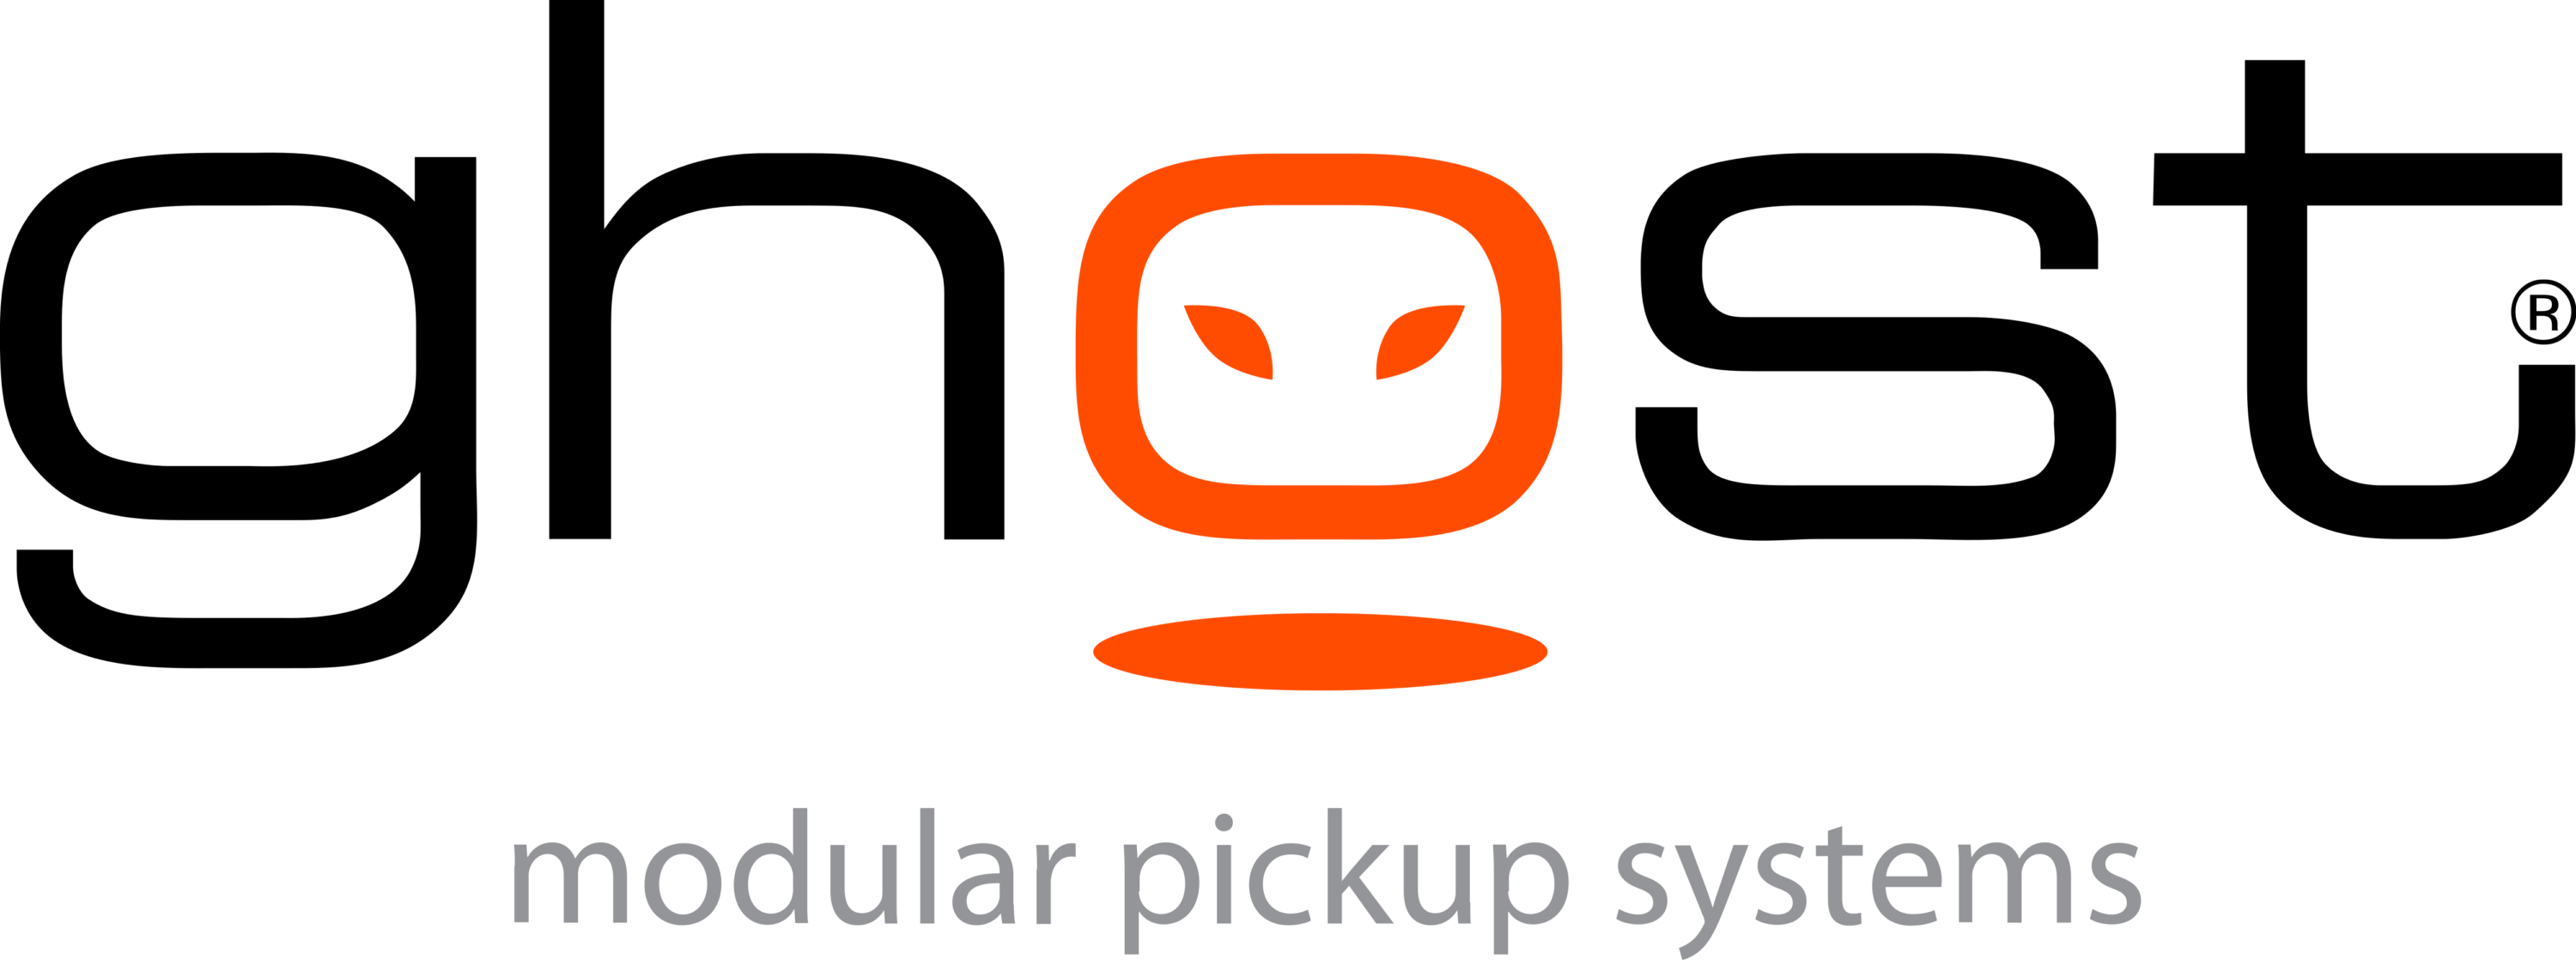 Ghost Modular Pickup System Logo